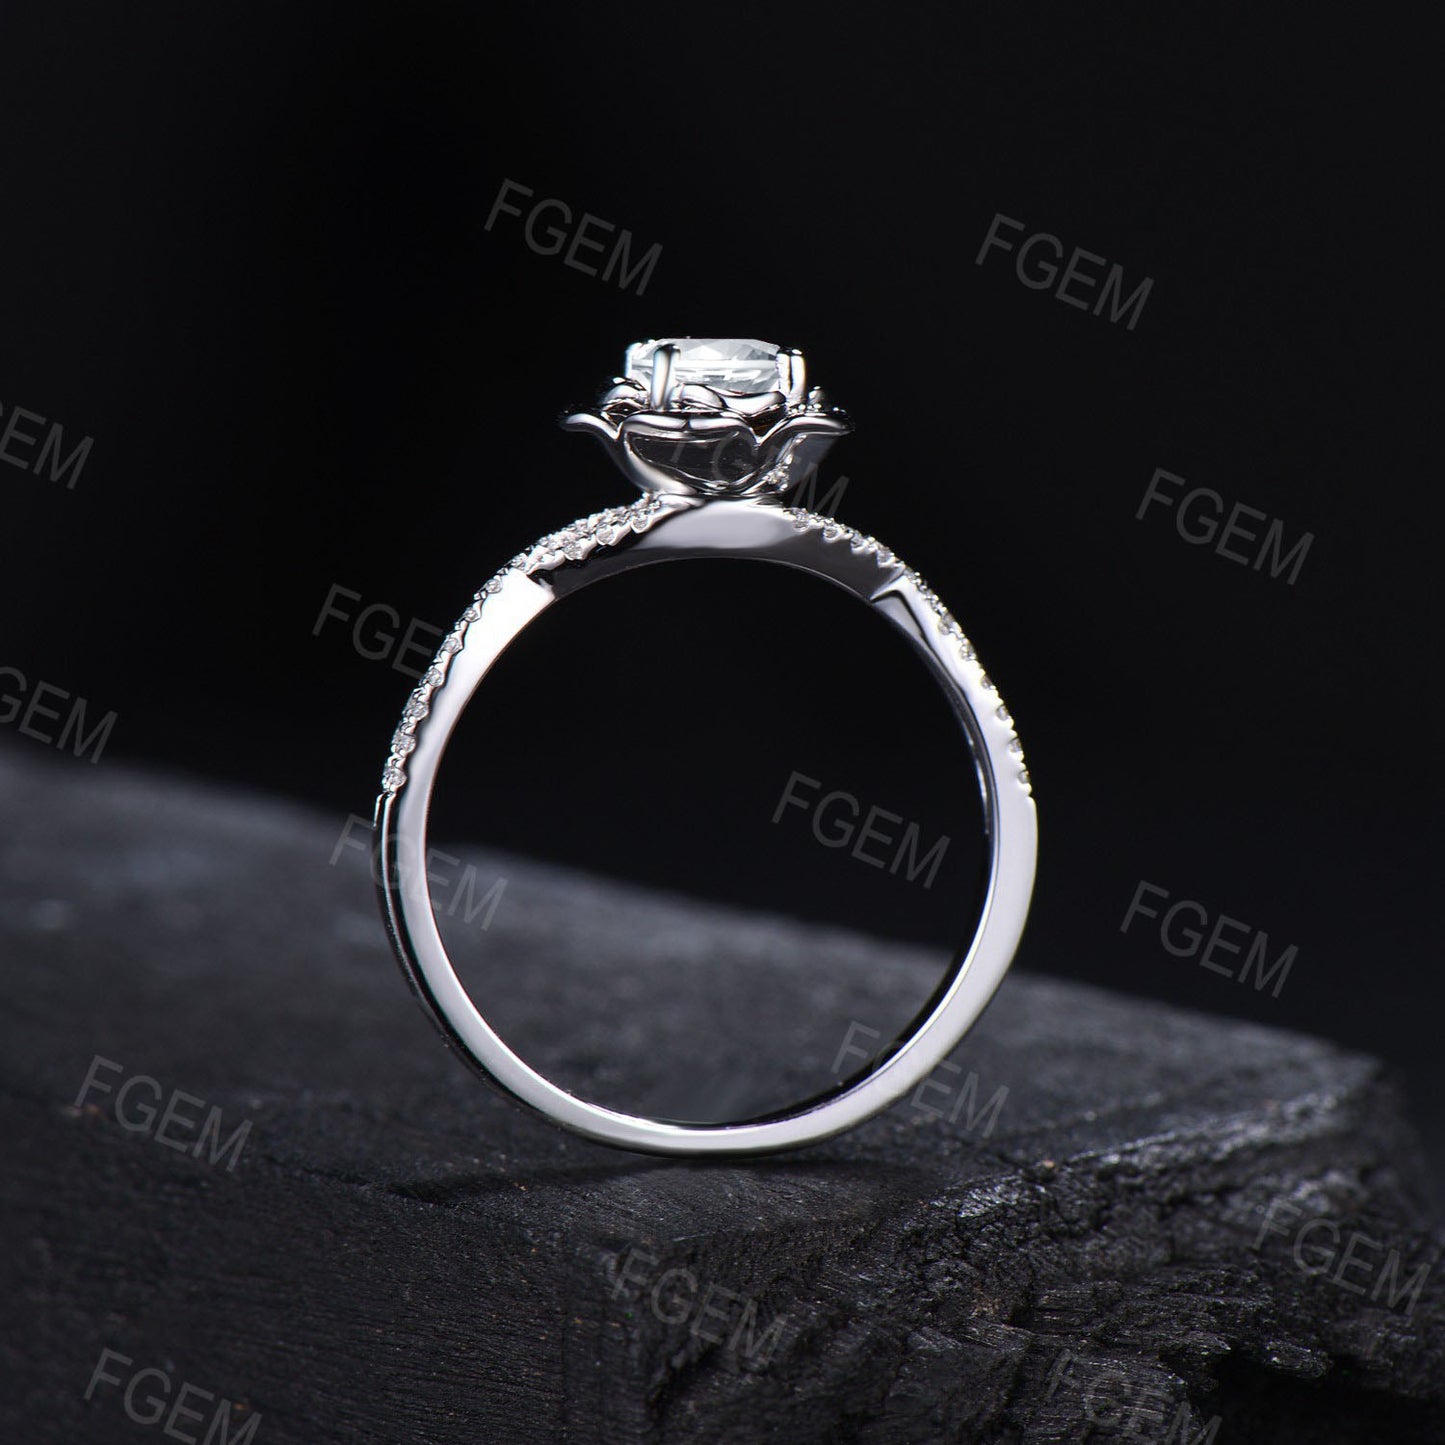 Moissanite Diamond Rose Flower Engagement Ring 14K White Gold Infinity Twist Wedding Ring  Half Eternity Promise Anniversary Ring Platinum